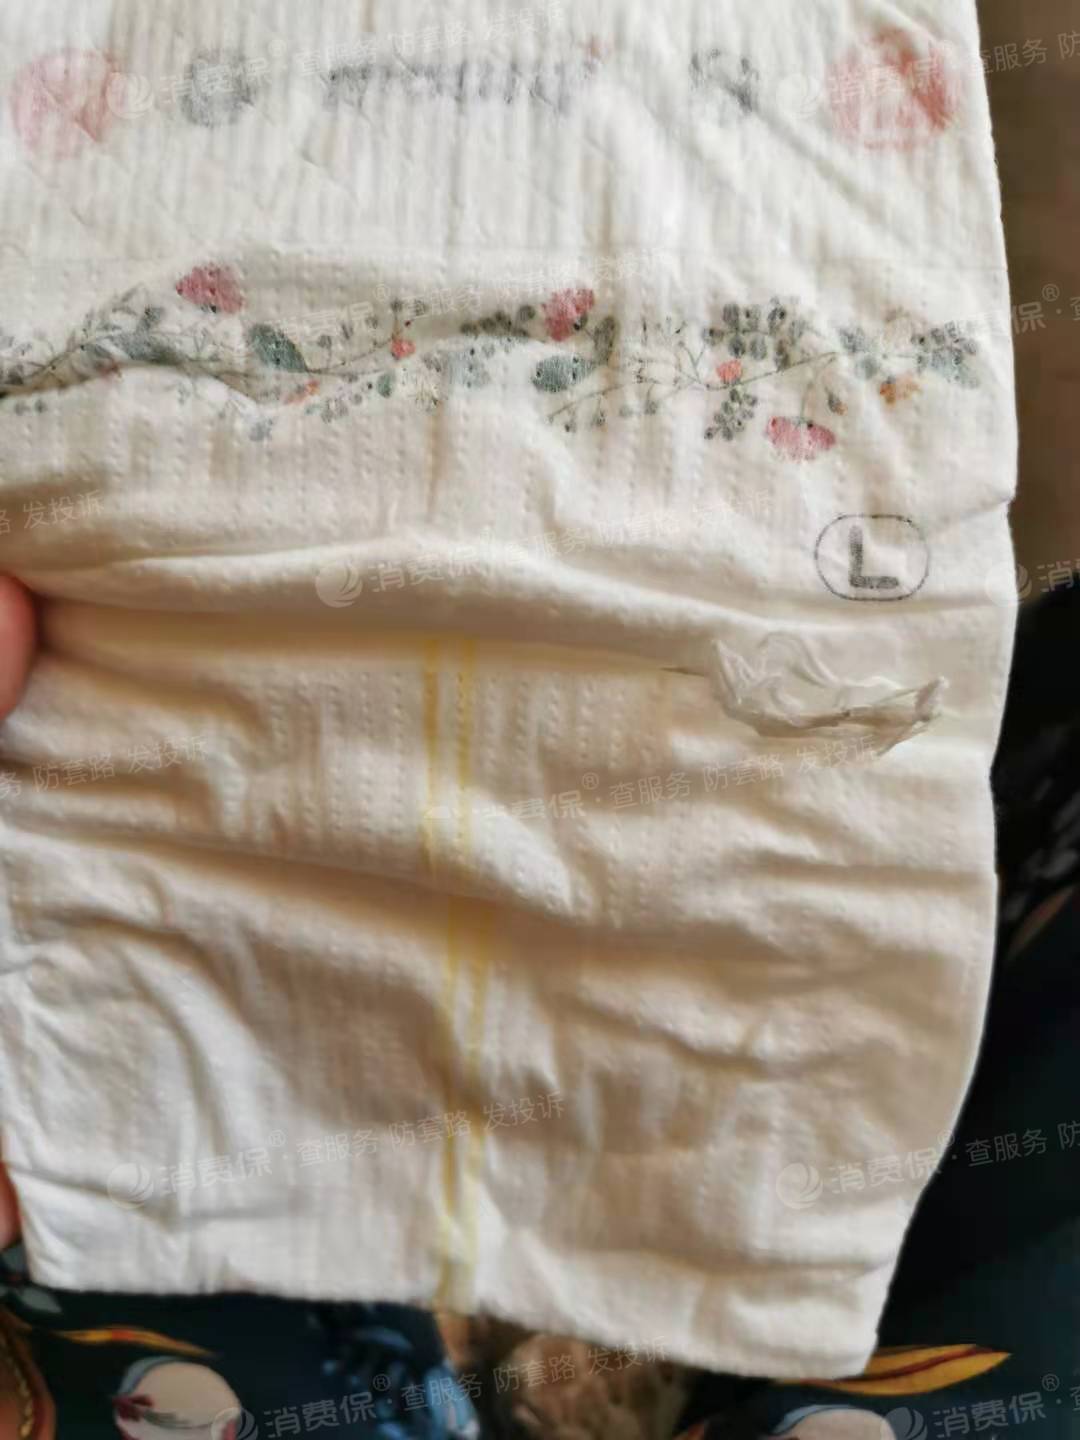 官方旗舰店买了三包纸尿裤,使用到第三包时,发现部分纸尿裤存在破损